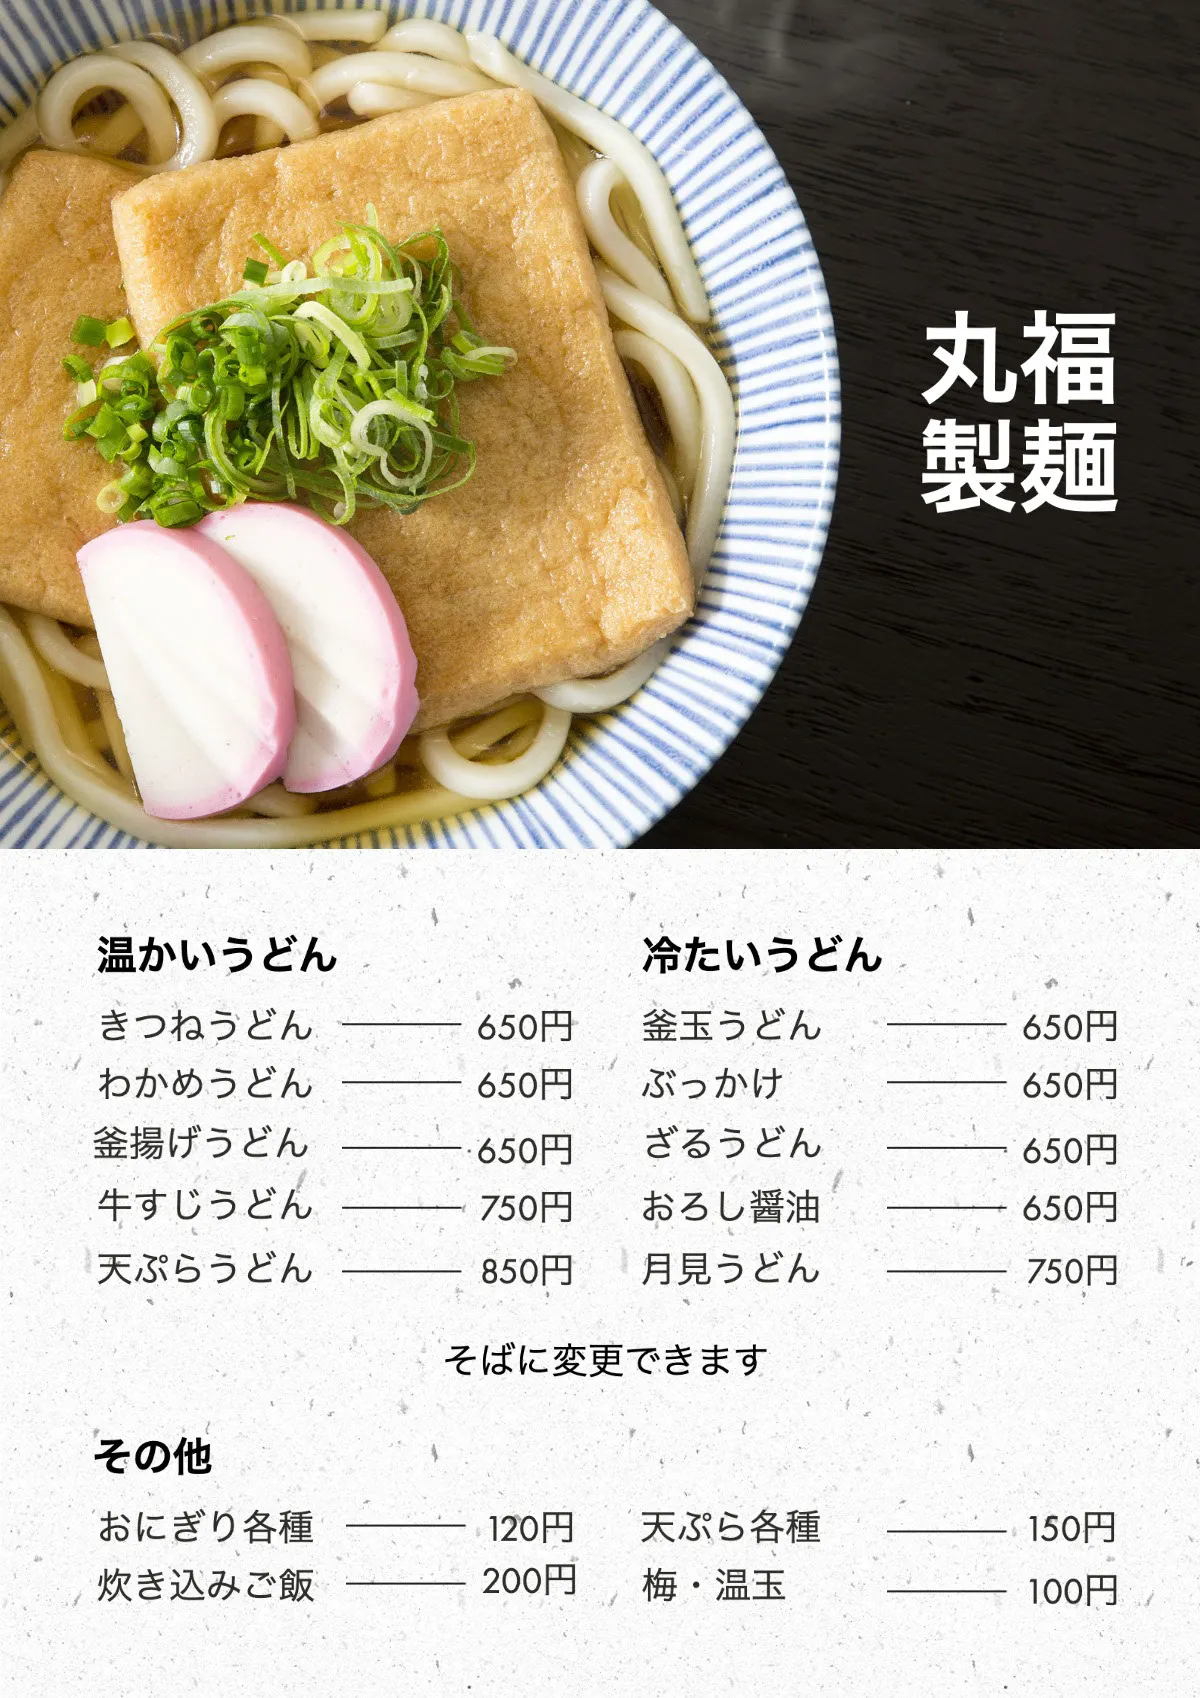 Udon menu